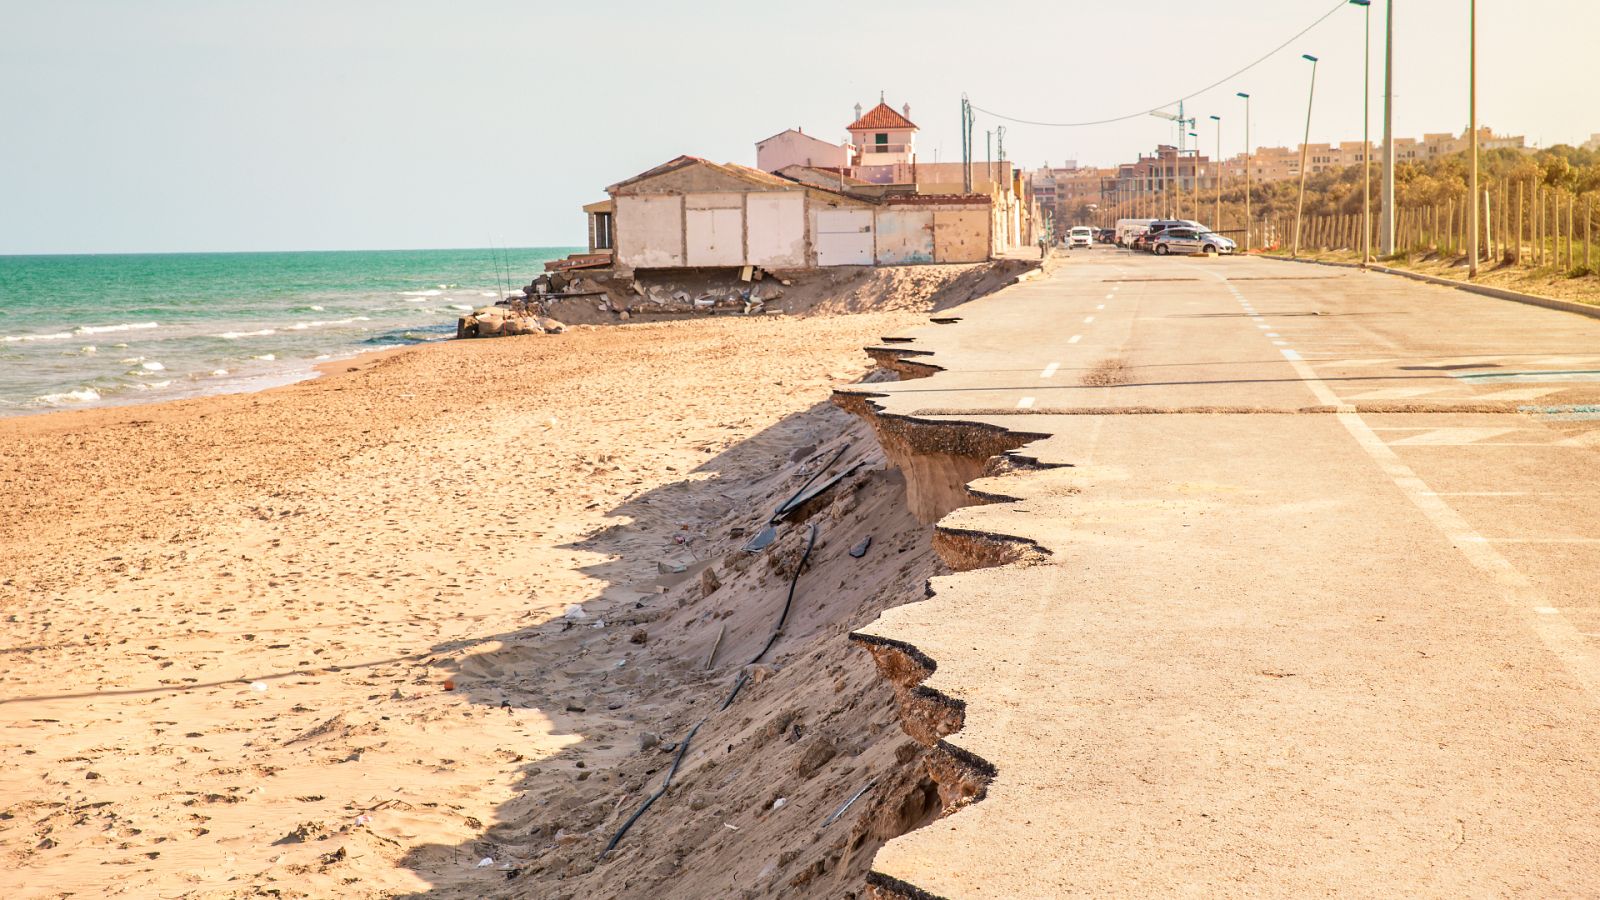 Según los expertos, conviene replanificar el litoral valenciano para evitar que los efectos del cambio climático puedan costar vidas